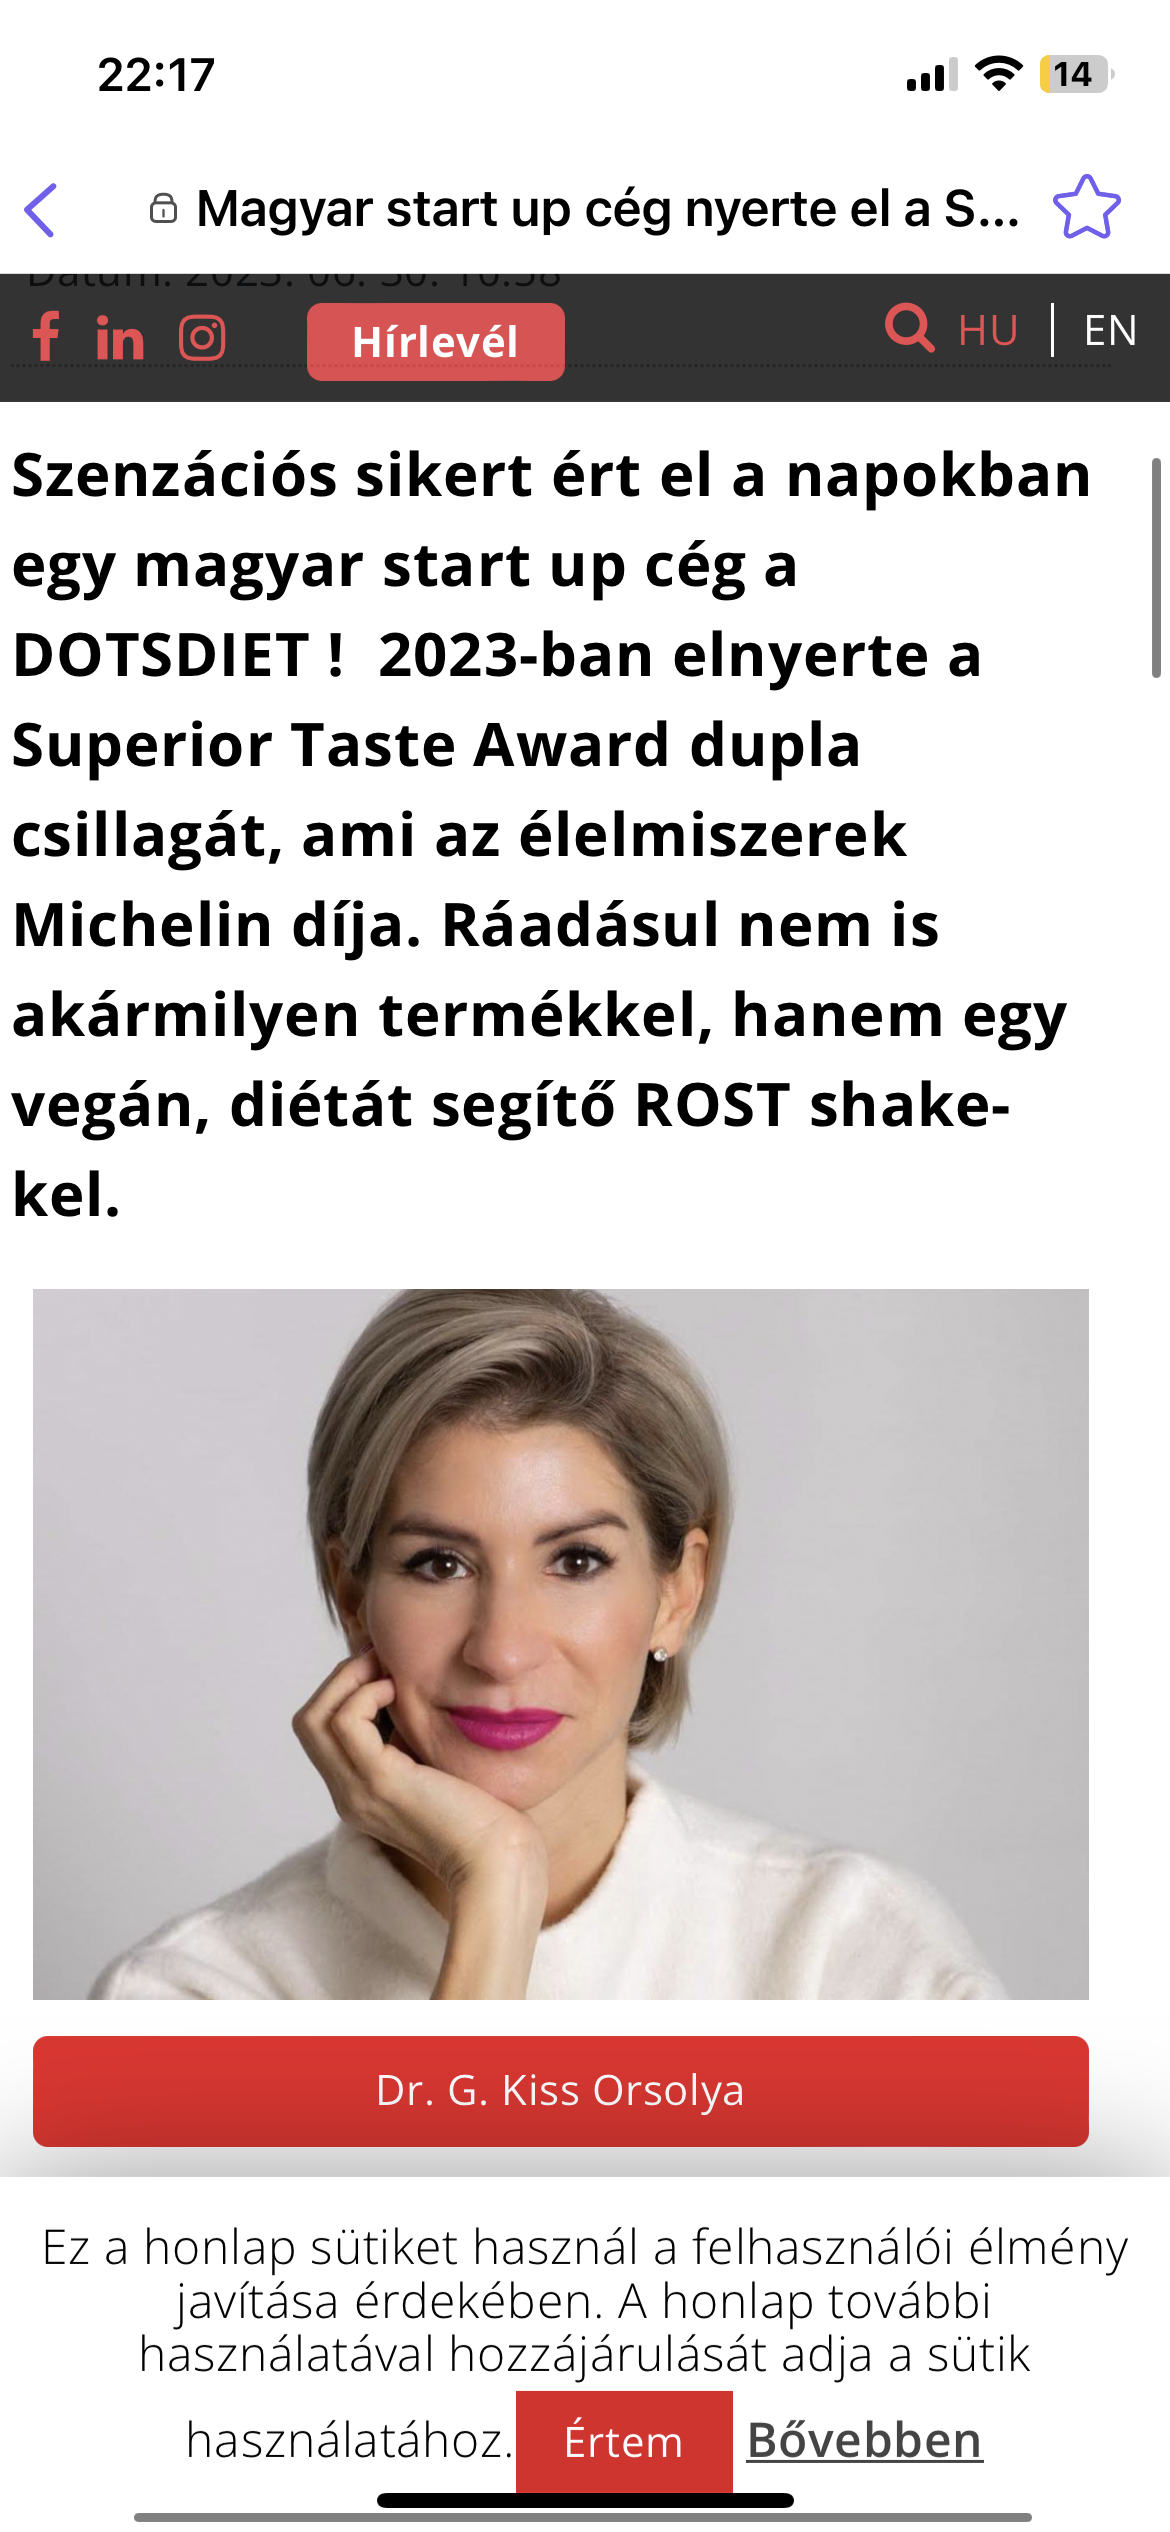 Elolvasom a cikket Magyar start up cég nyerte el a Superior Taste Award dupla csillagát